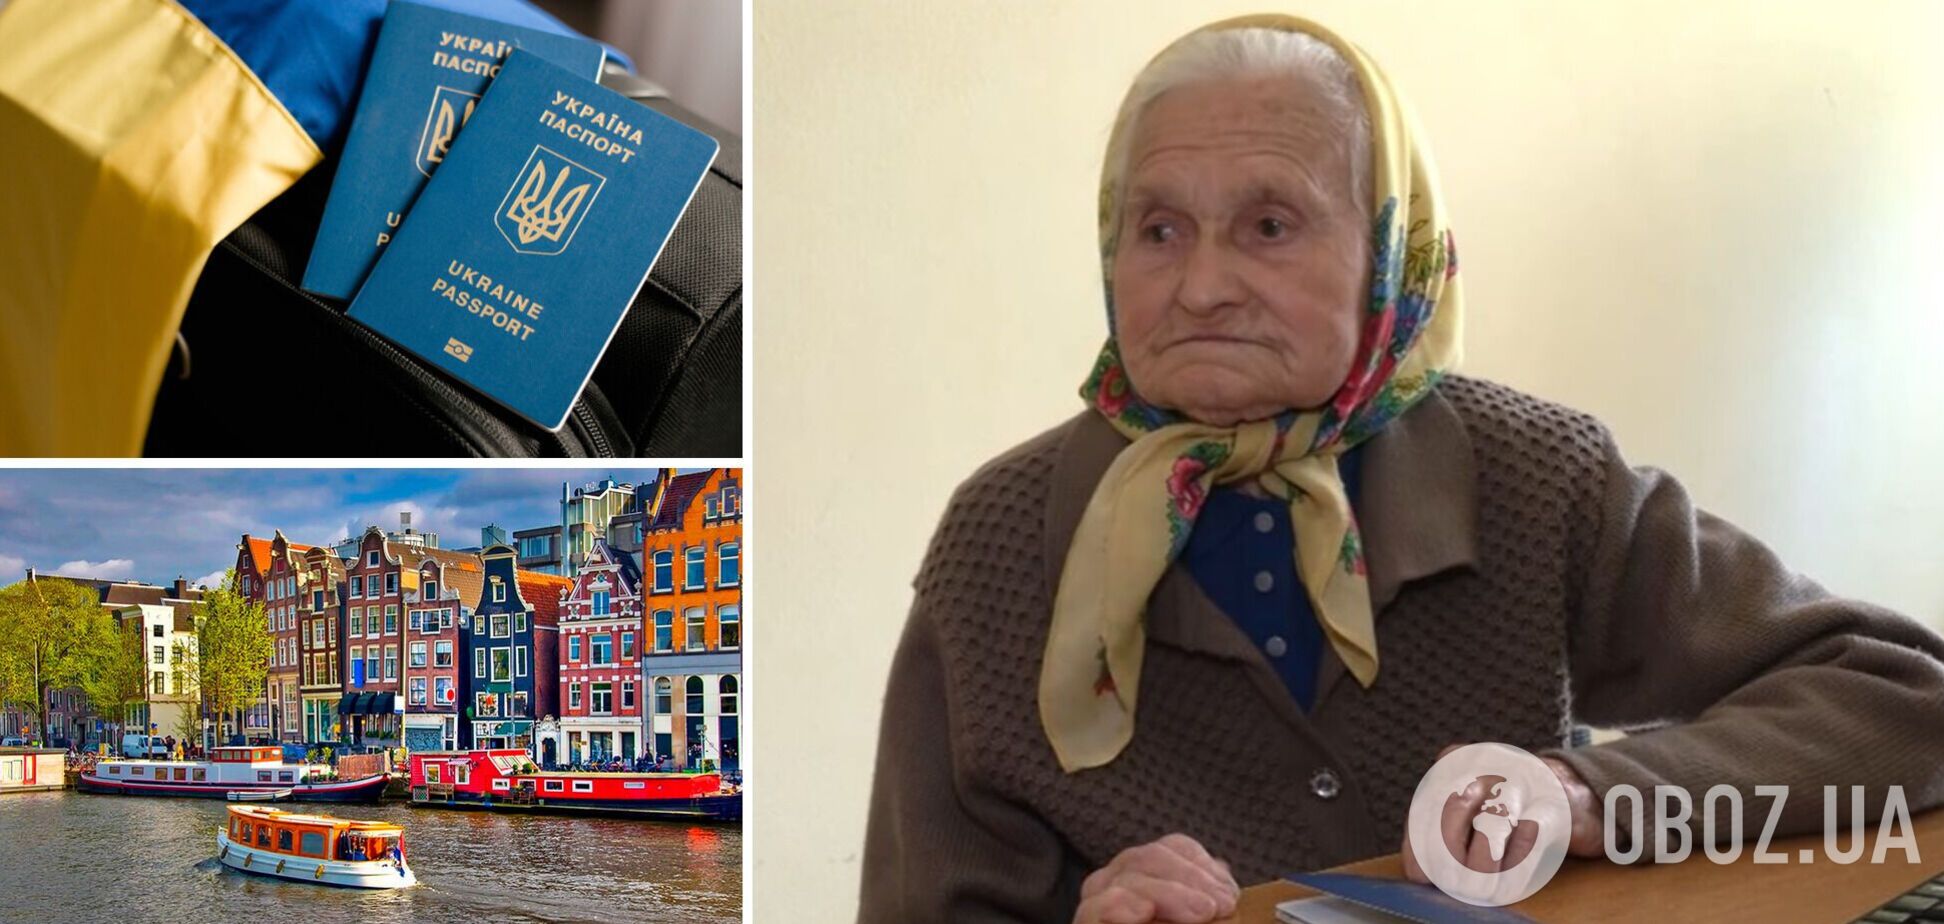 Бывшая связная УПА в 96 лет получила загранпаспорт, чтобы увидеться с внучкой в Амстердаме. Видео